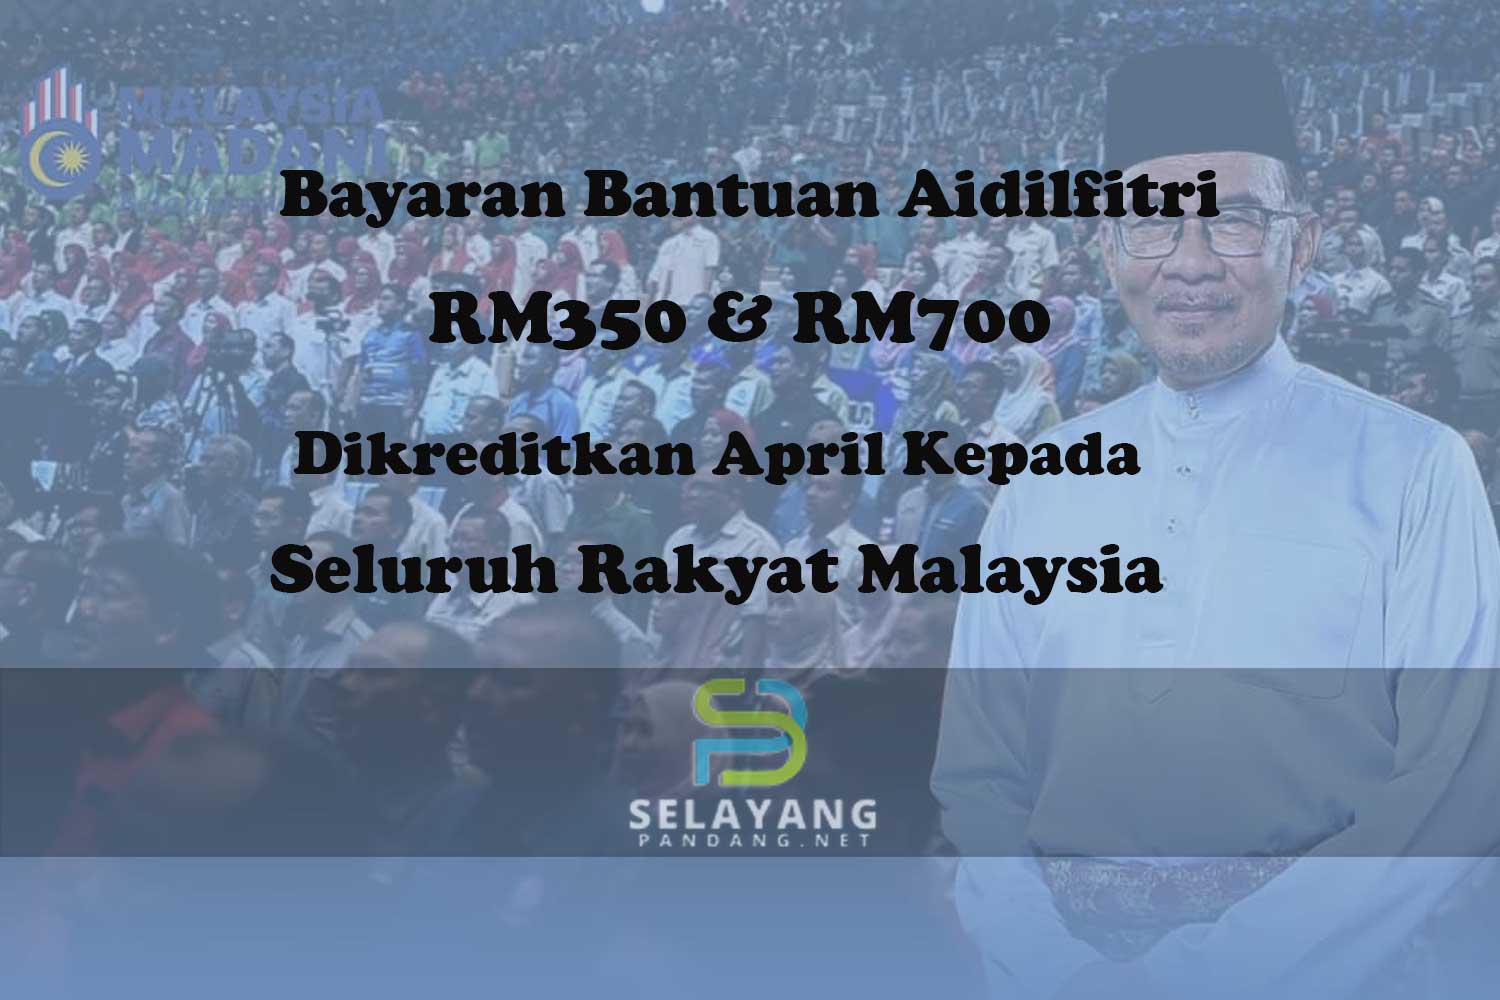 Bayaran Bantuan Aidilfitri RM350 & RM700 dikreditkan April kepada seluruh rakyat Malaysia